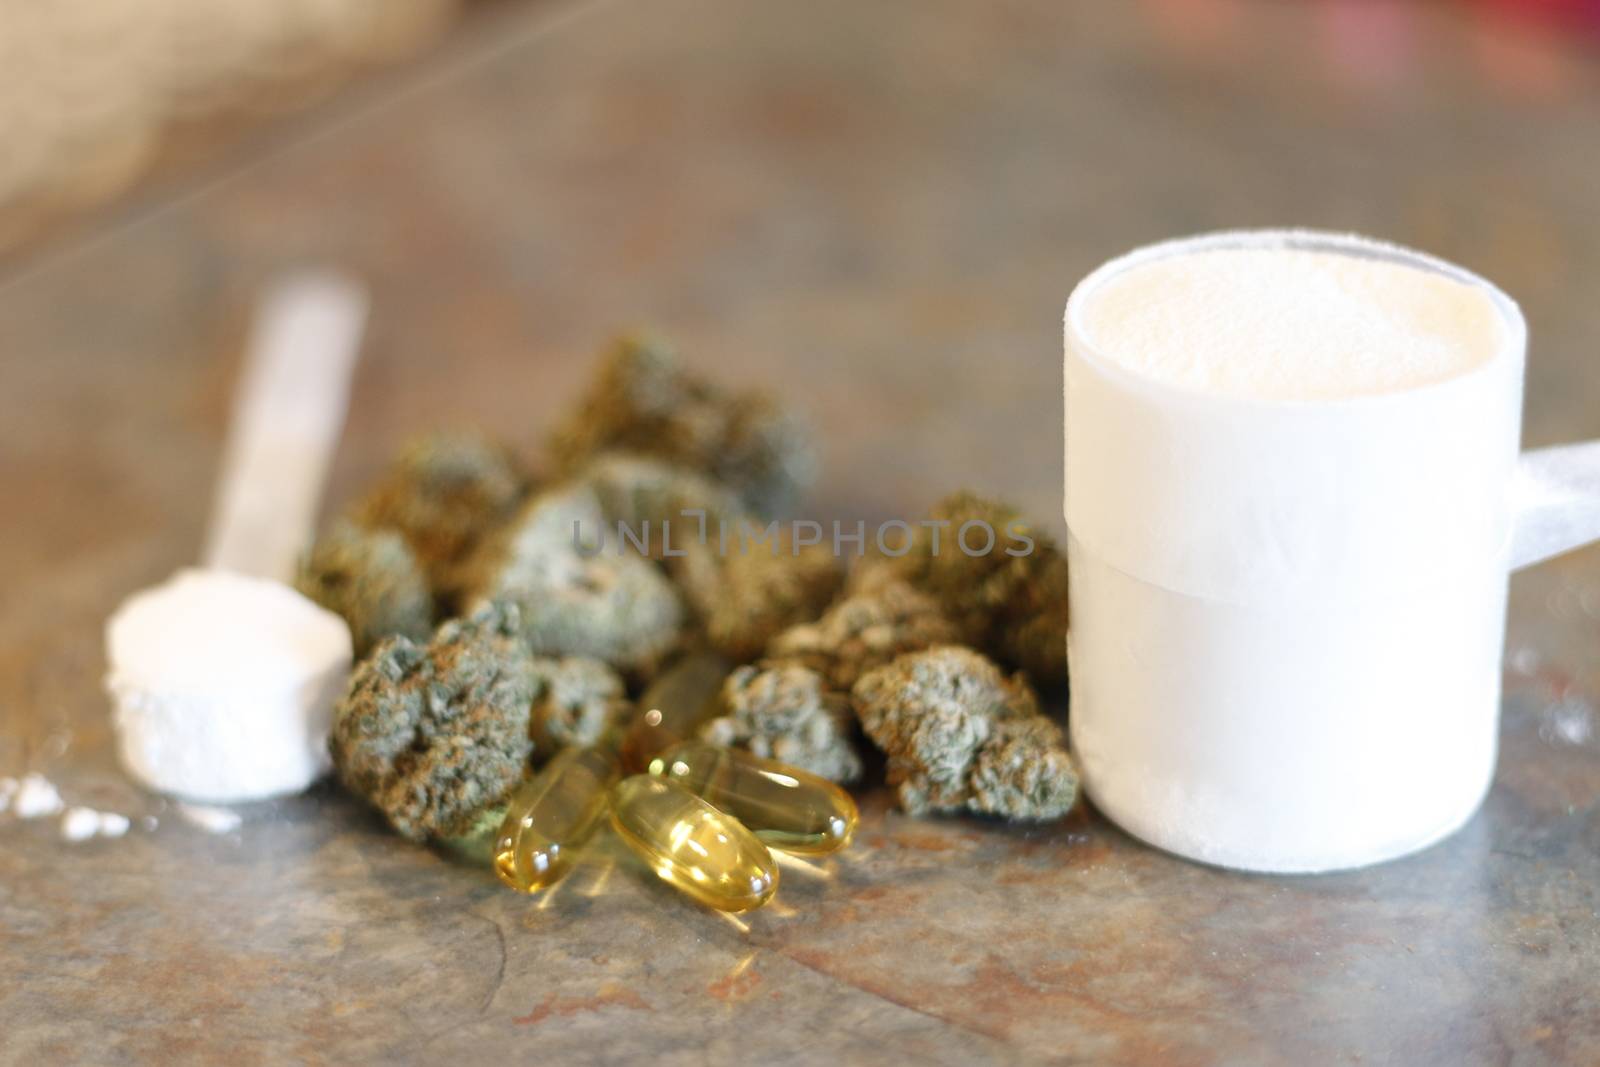 creatine and protein supplements next to marijuana by mynewturtle1